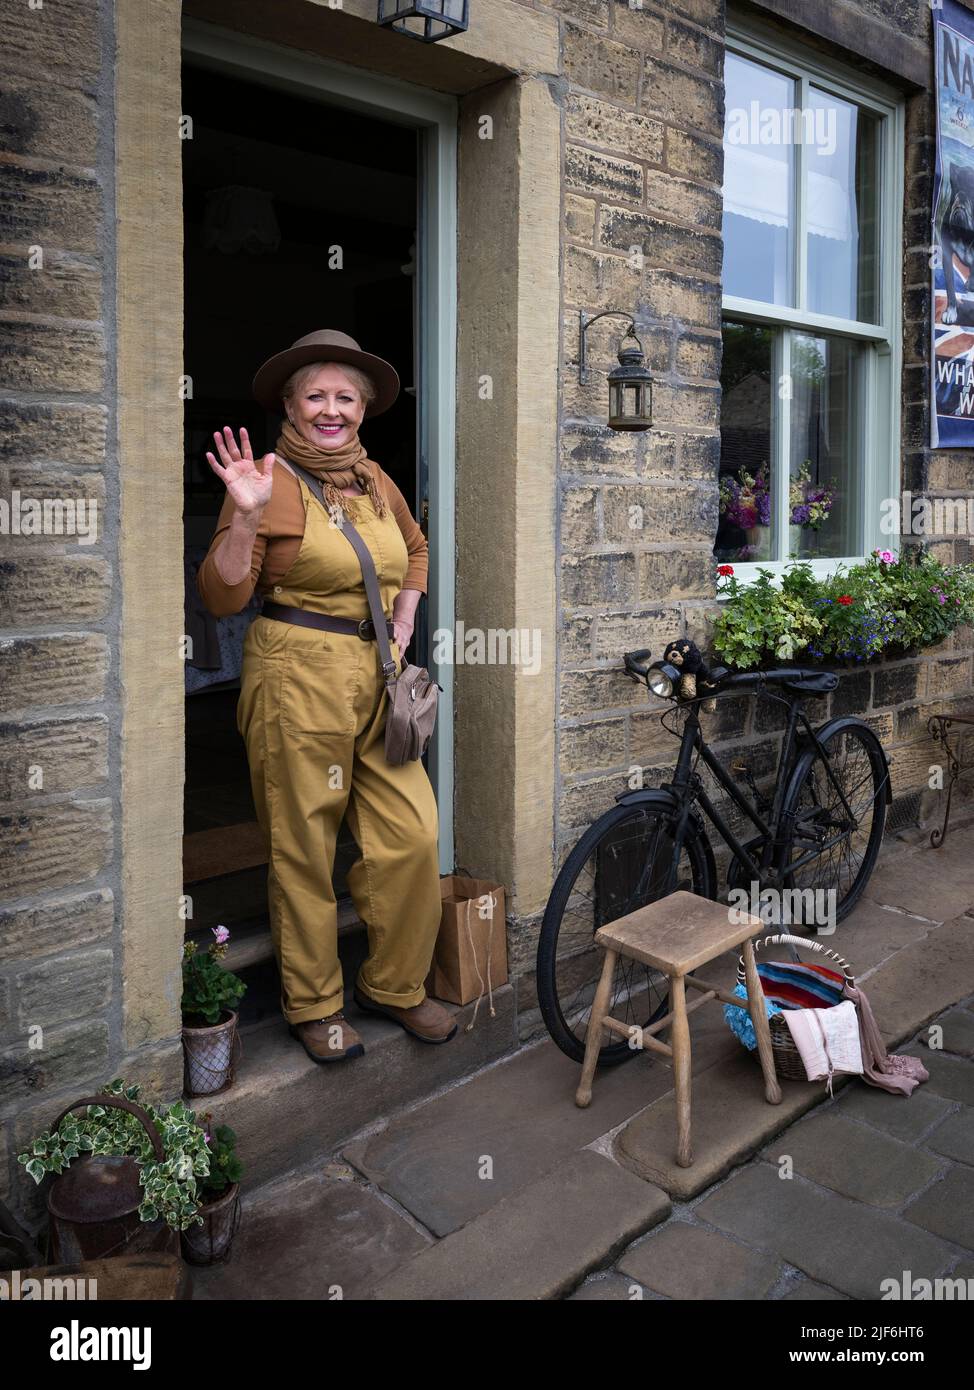 Haworth 1940 événement rétro nostalgique d'histoire vivante (femme en costume vintage WW2 debout posant à deux pas) - main Street, West Yorkshire Angleterre Royaume-Uni. Banque D'Images